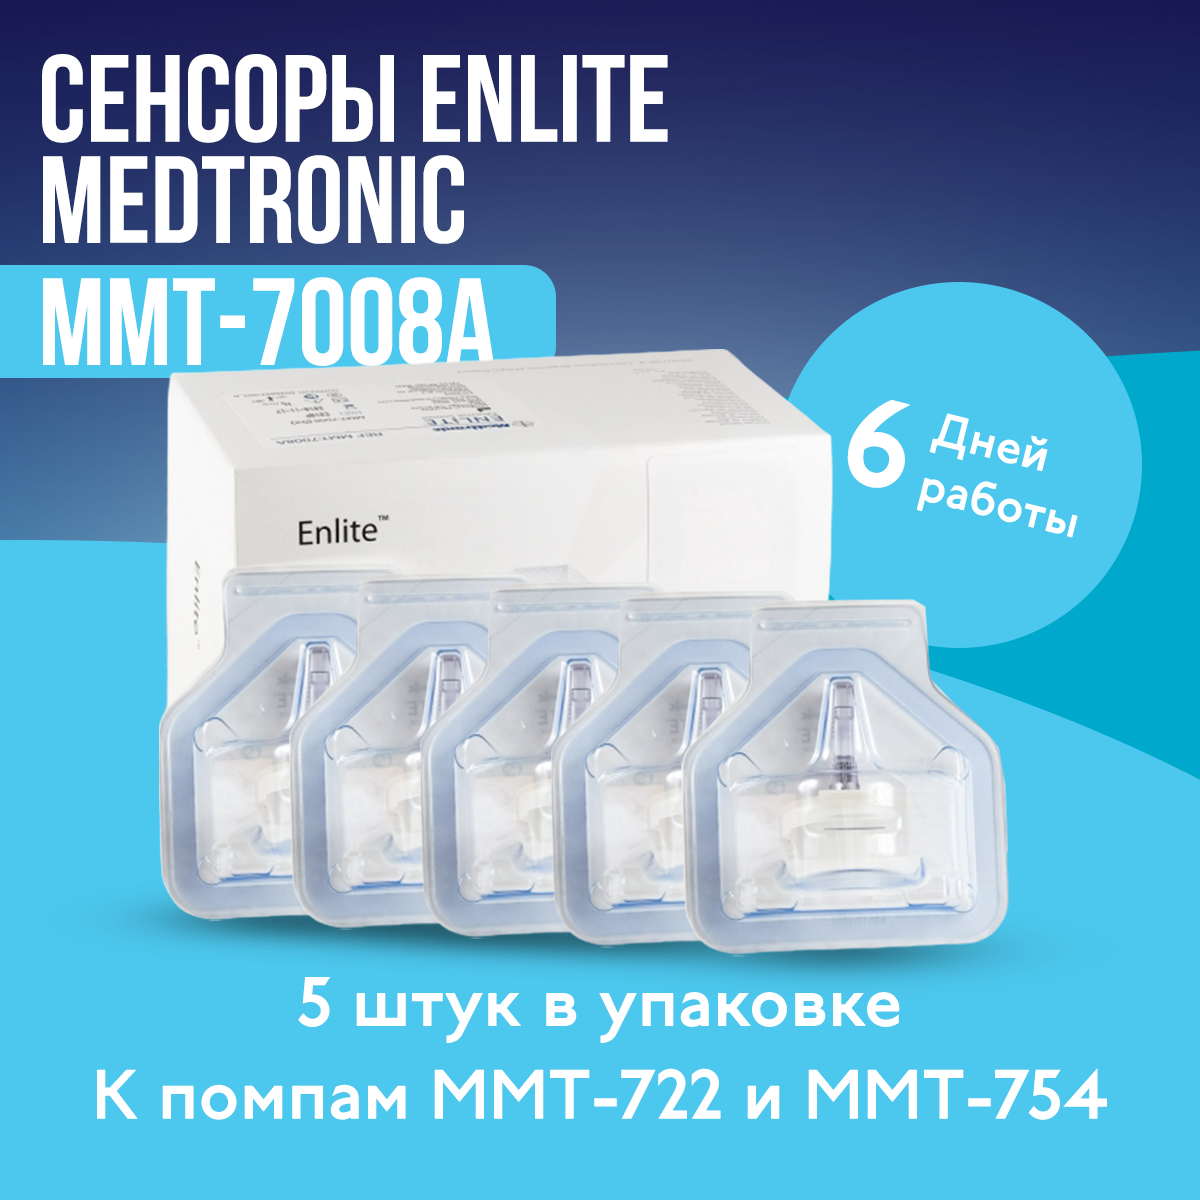 Сенсоры для измерения сахара в крови Medtronic Enlite, Энлайт Медтроник, ММТ-7008A, для мониторинга глюкозы, без прокола пальца, 5 шт